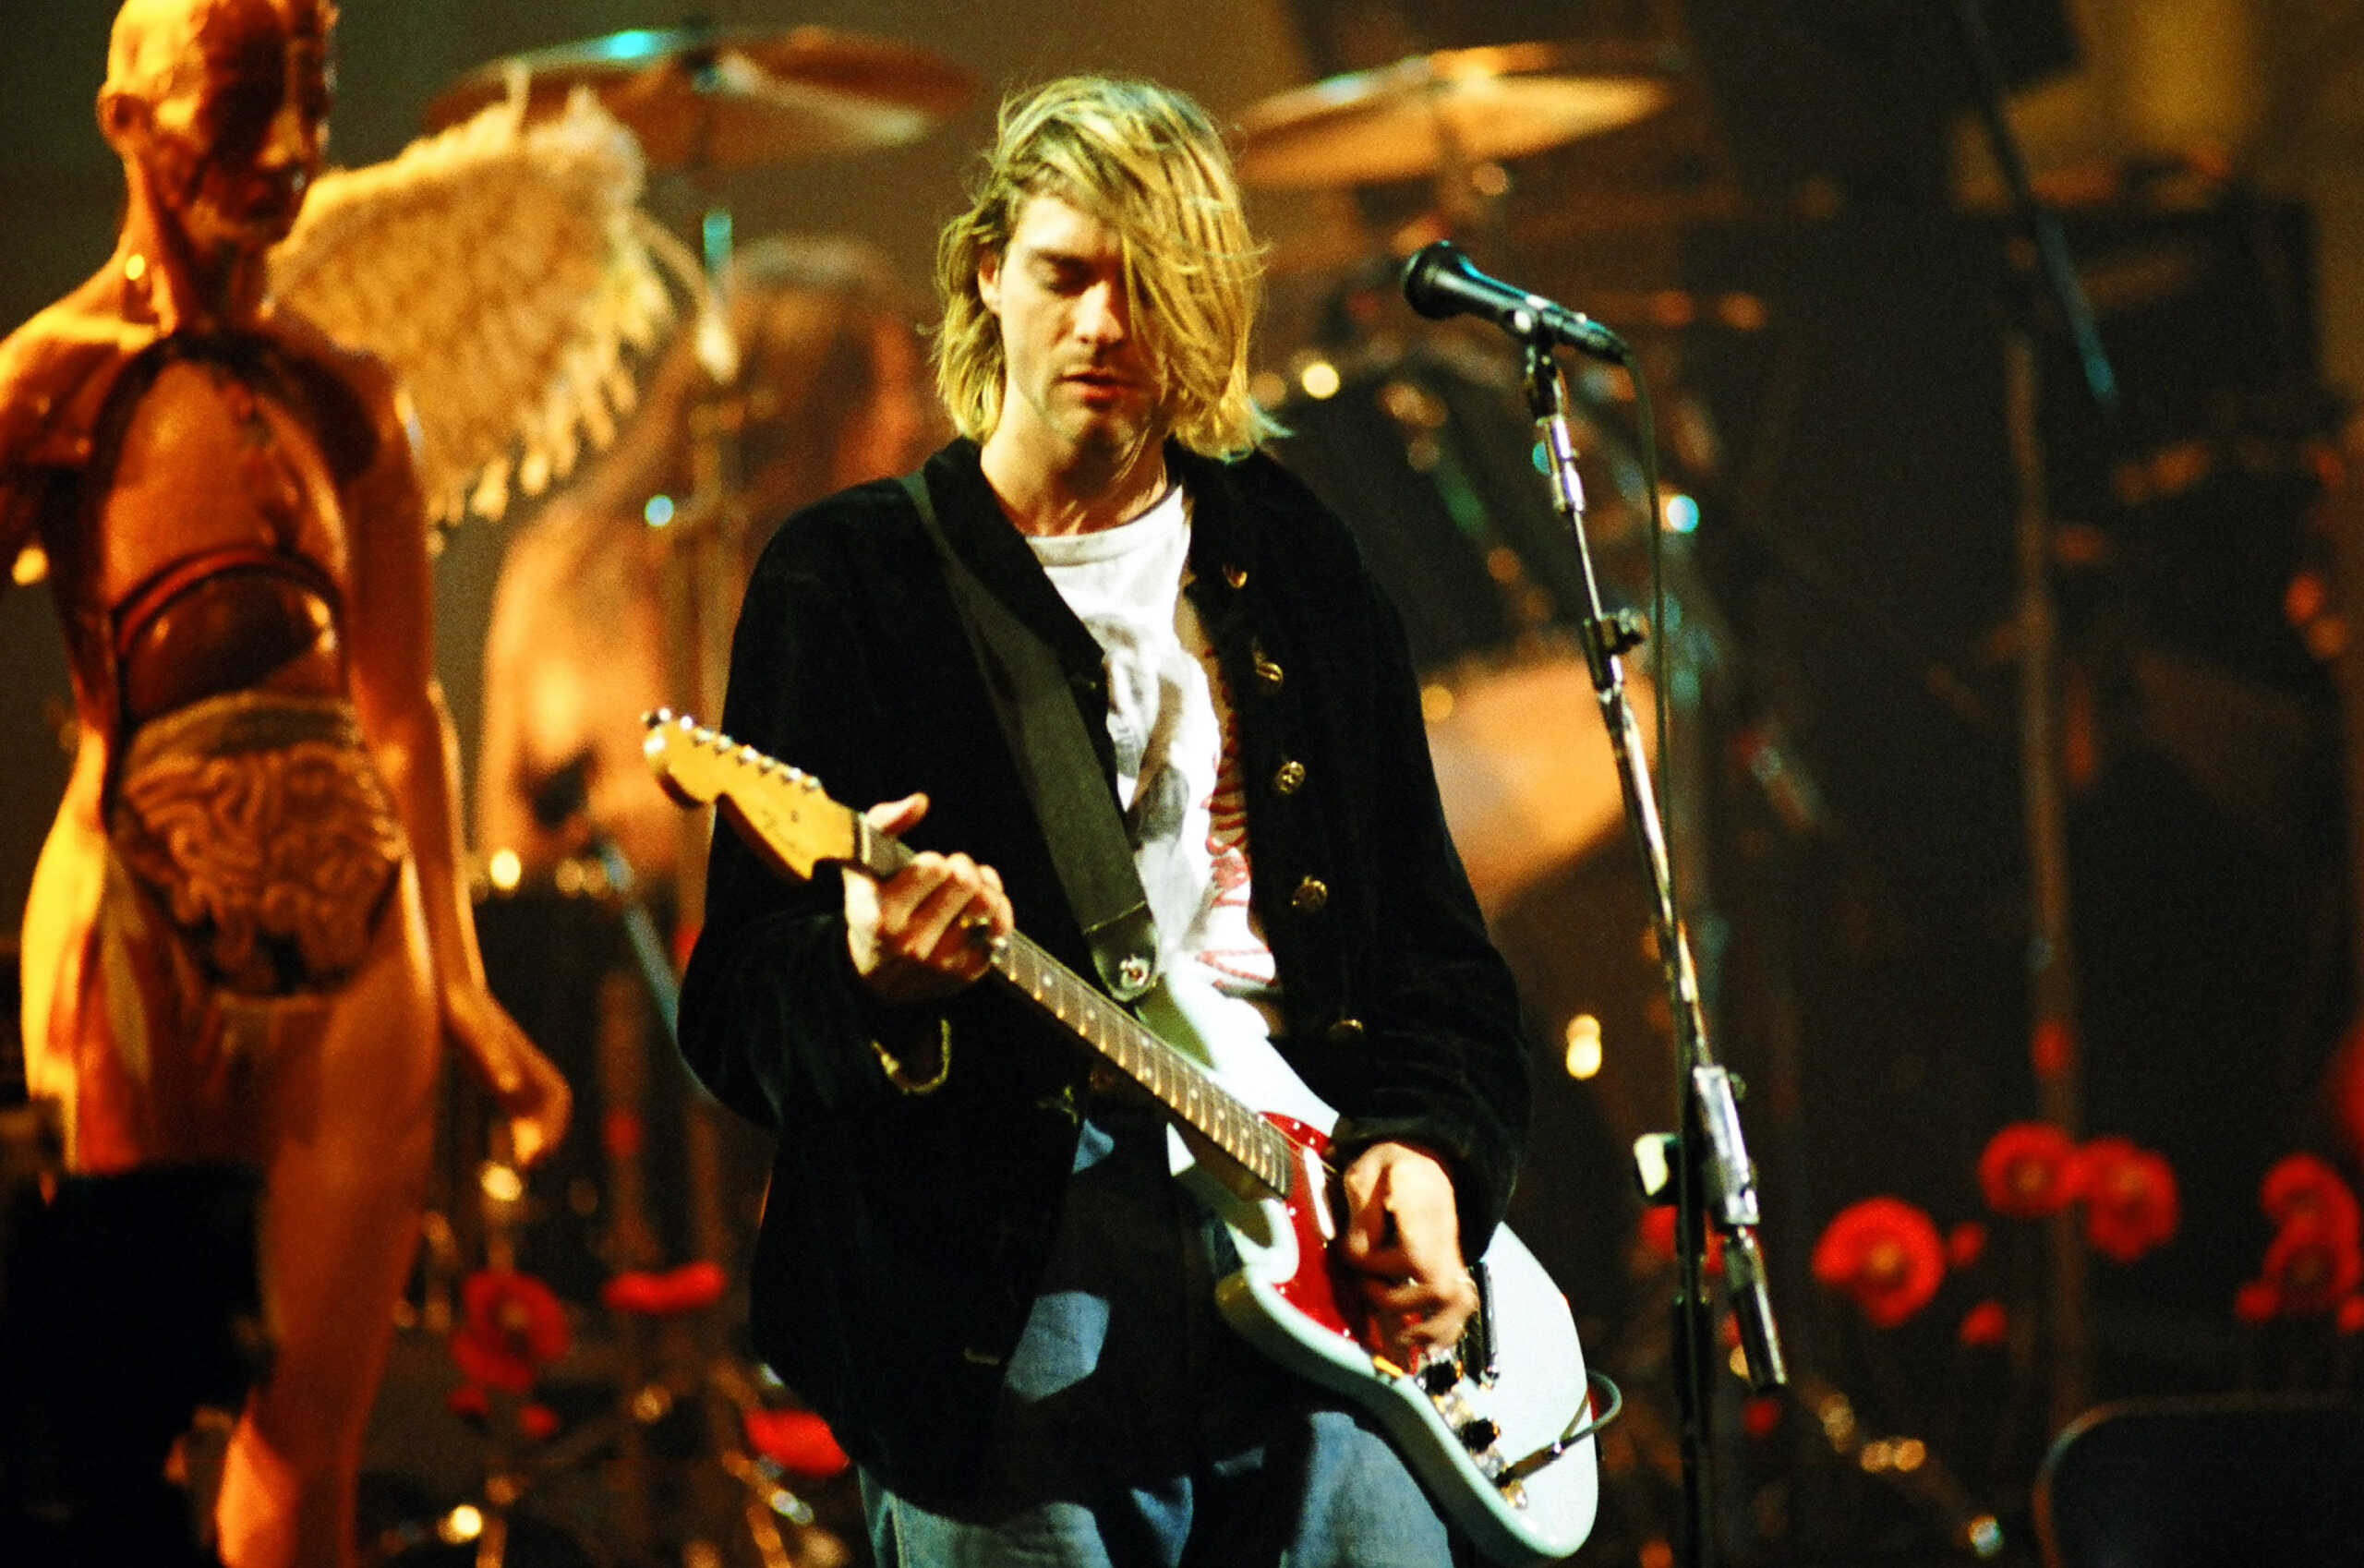 Κερτ Κομπέιν: Ο αυτοκαταστροφικός frontman των Nirvana και η αυτοκτονία στα 27